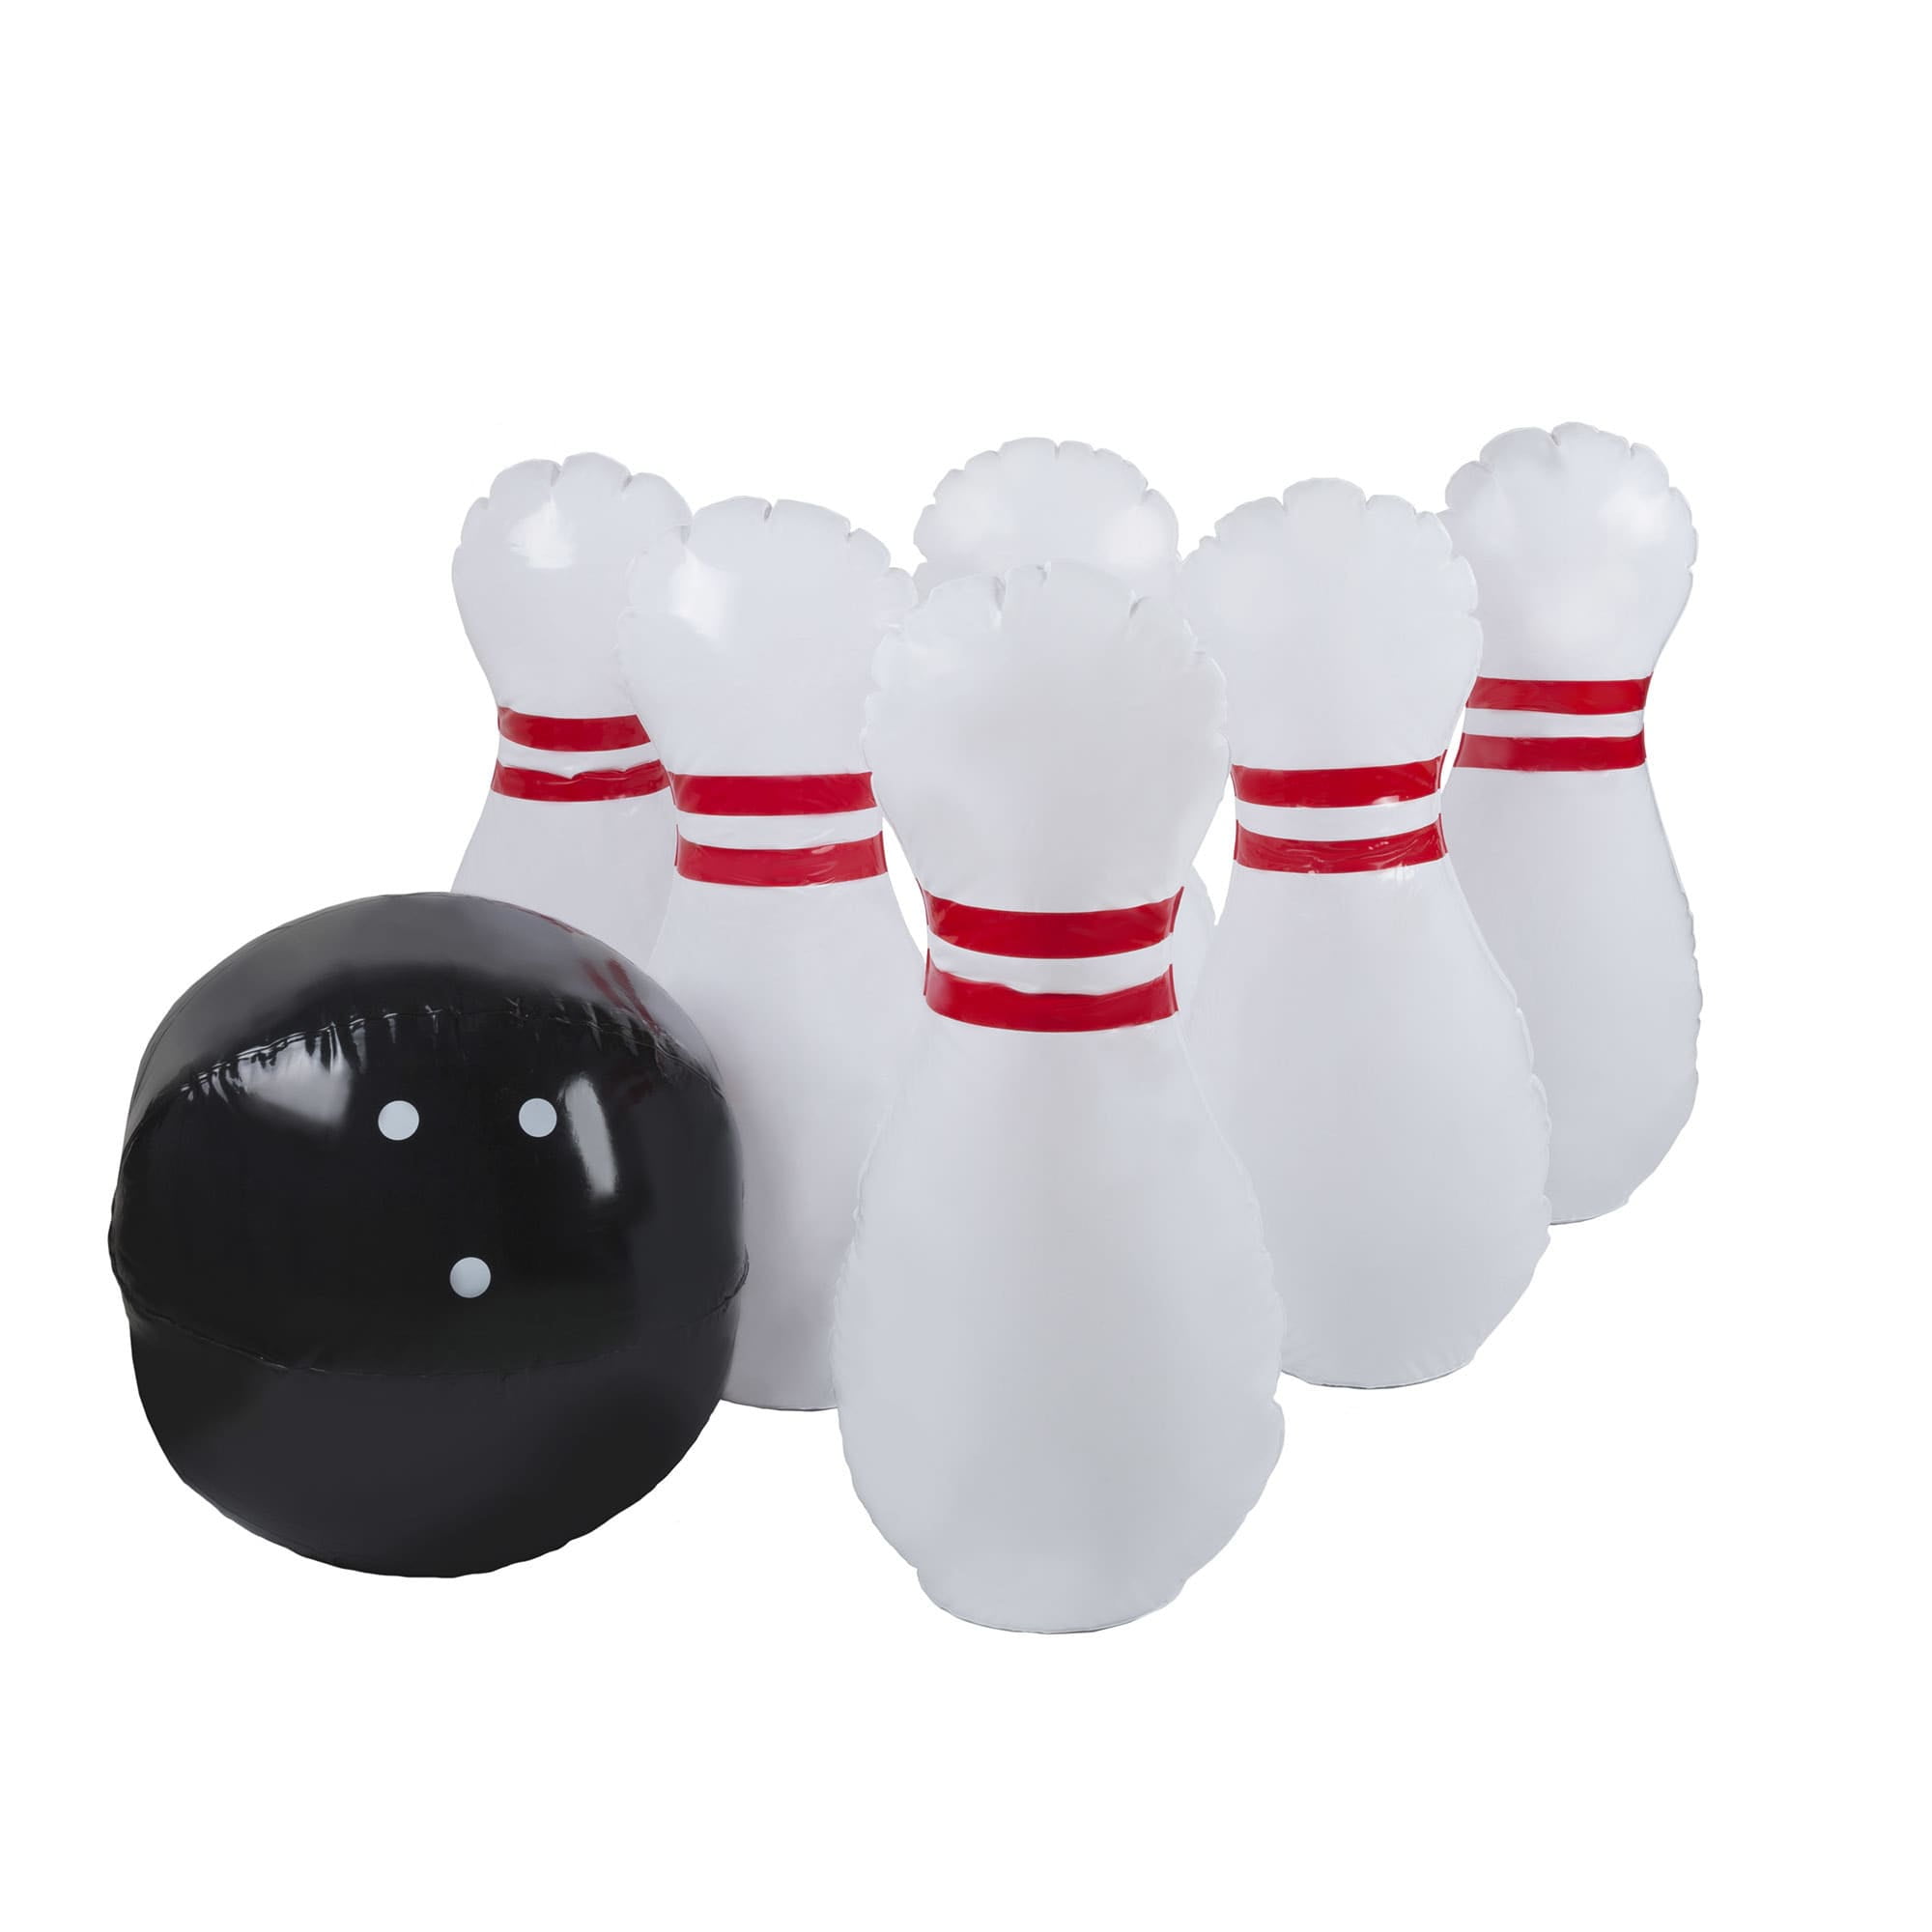 walmart giant bowling set